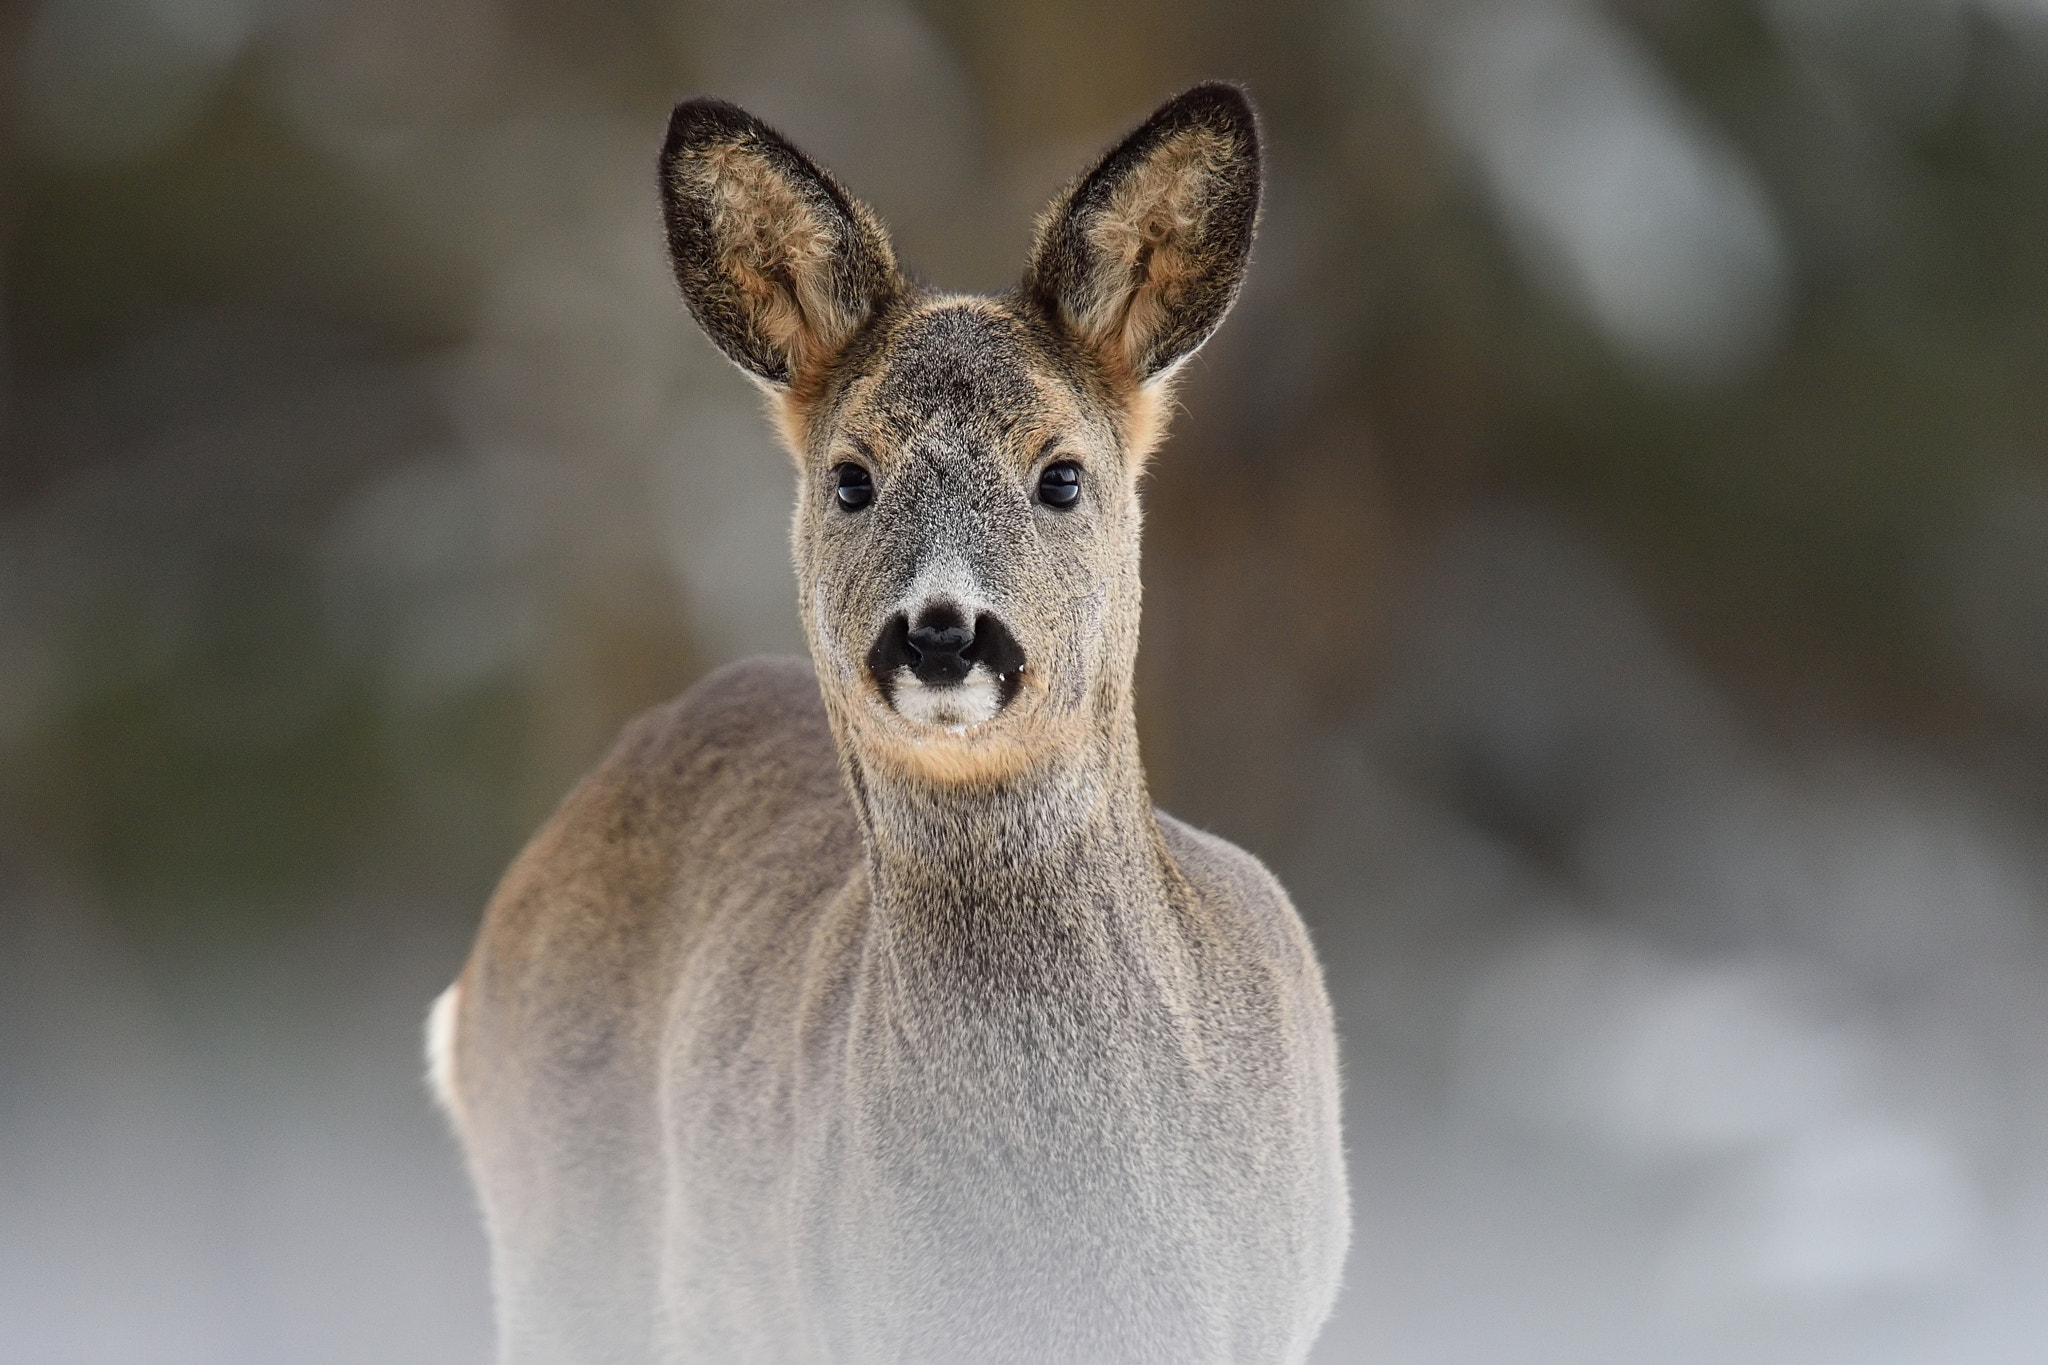 Nikon AF-S Nikkor 400mm F2.8G ED VR II sample photo. Roe deer portrait in a winter forest photography